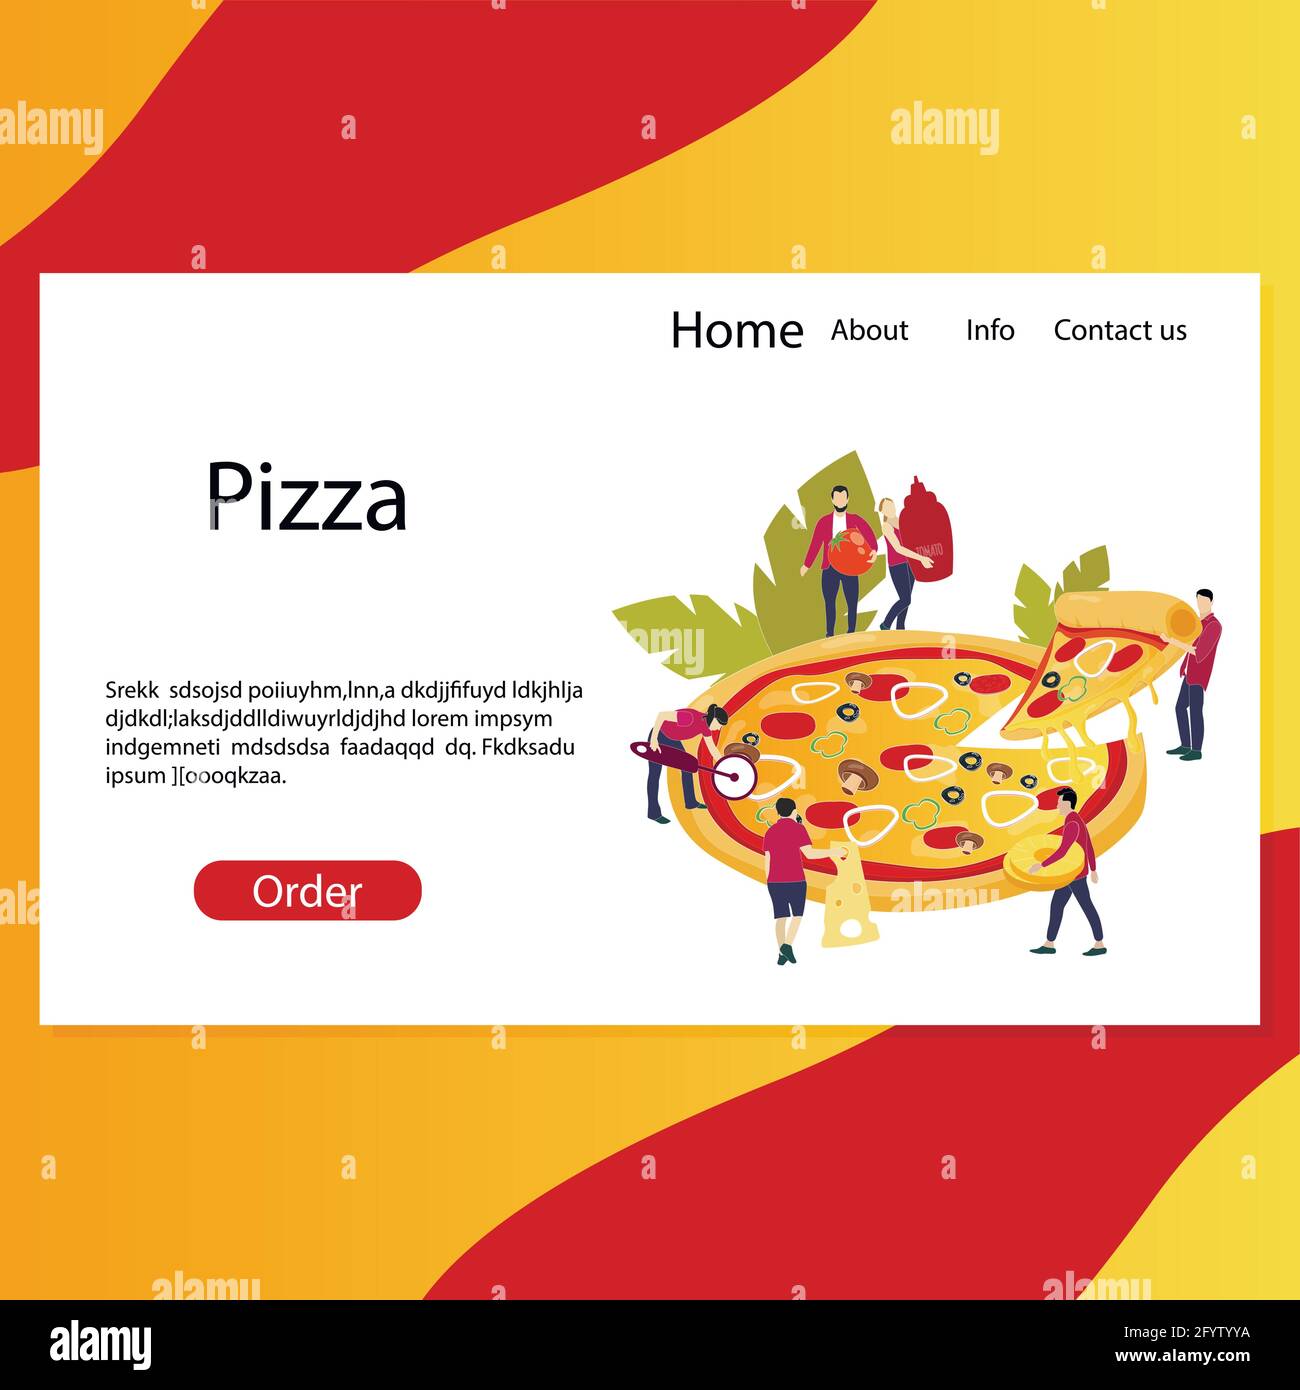 Pizzeria Web Landing Page, Website, um Ordnung zu machen, schnelle Bestellung leckere Pizza für Freunde. Template-Seite für italienische Fast Food, nehmen Scheibe und lecker Stock Vektor